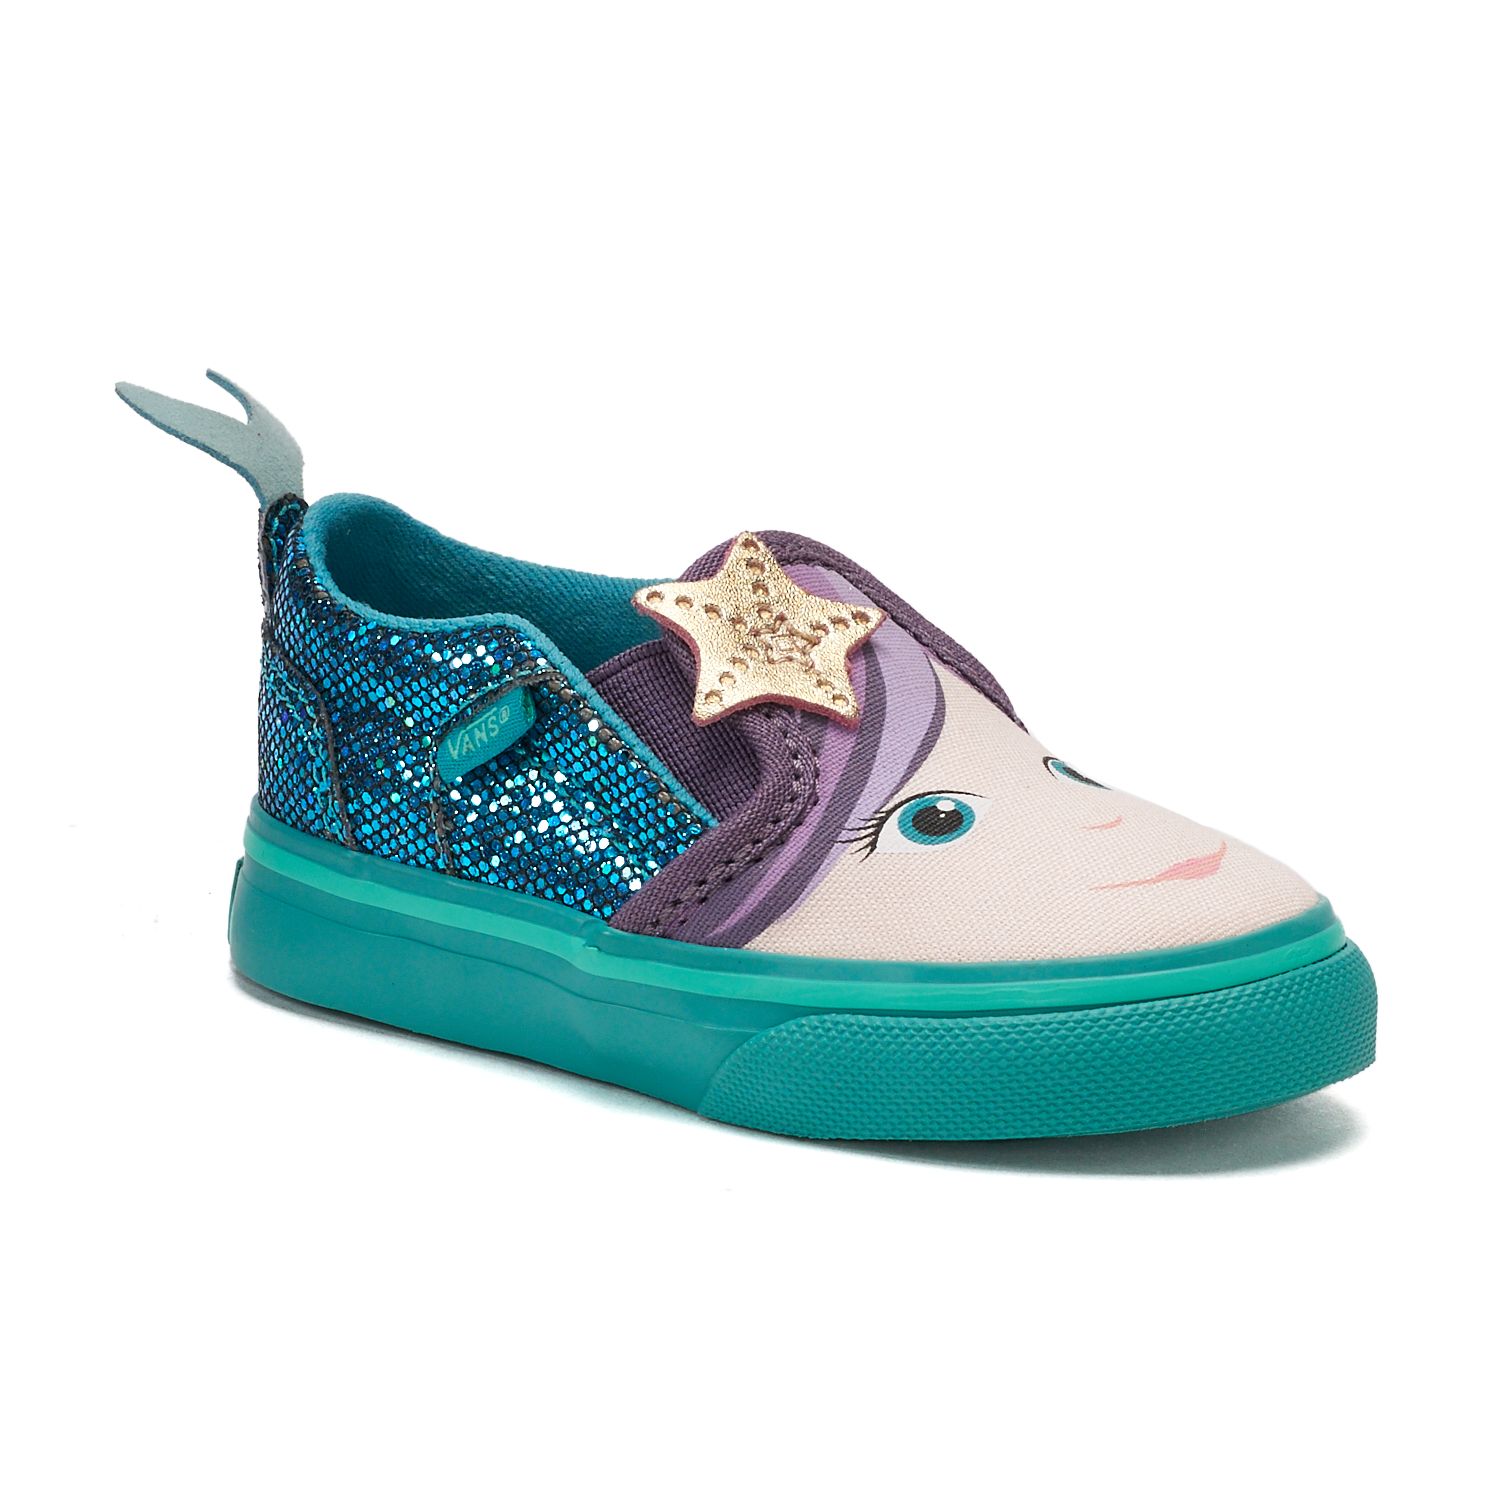 mermaid shoes vans